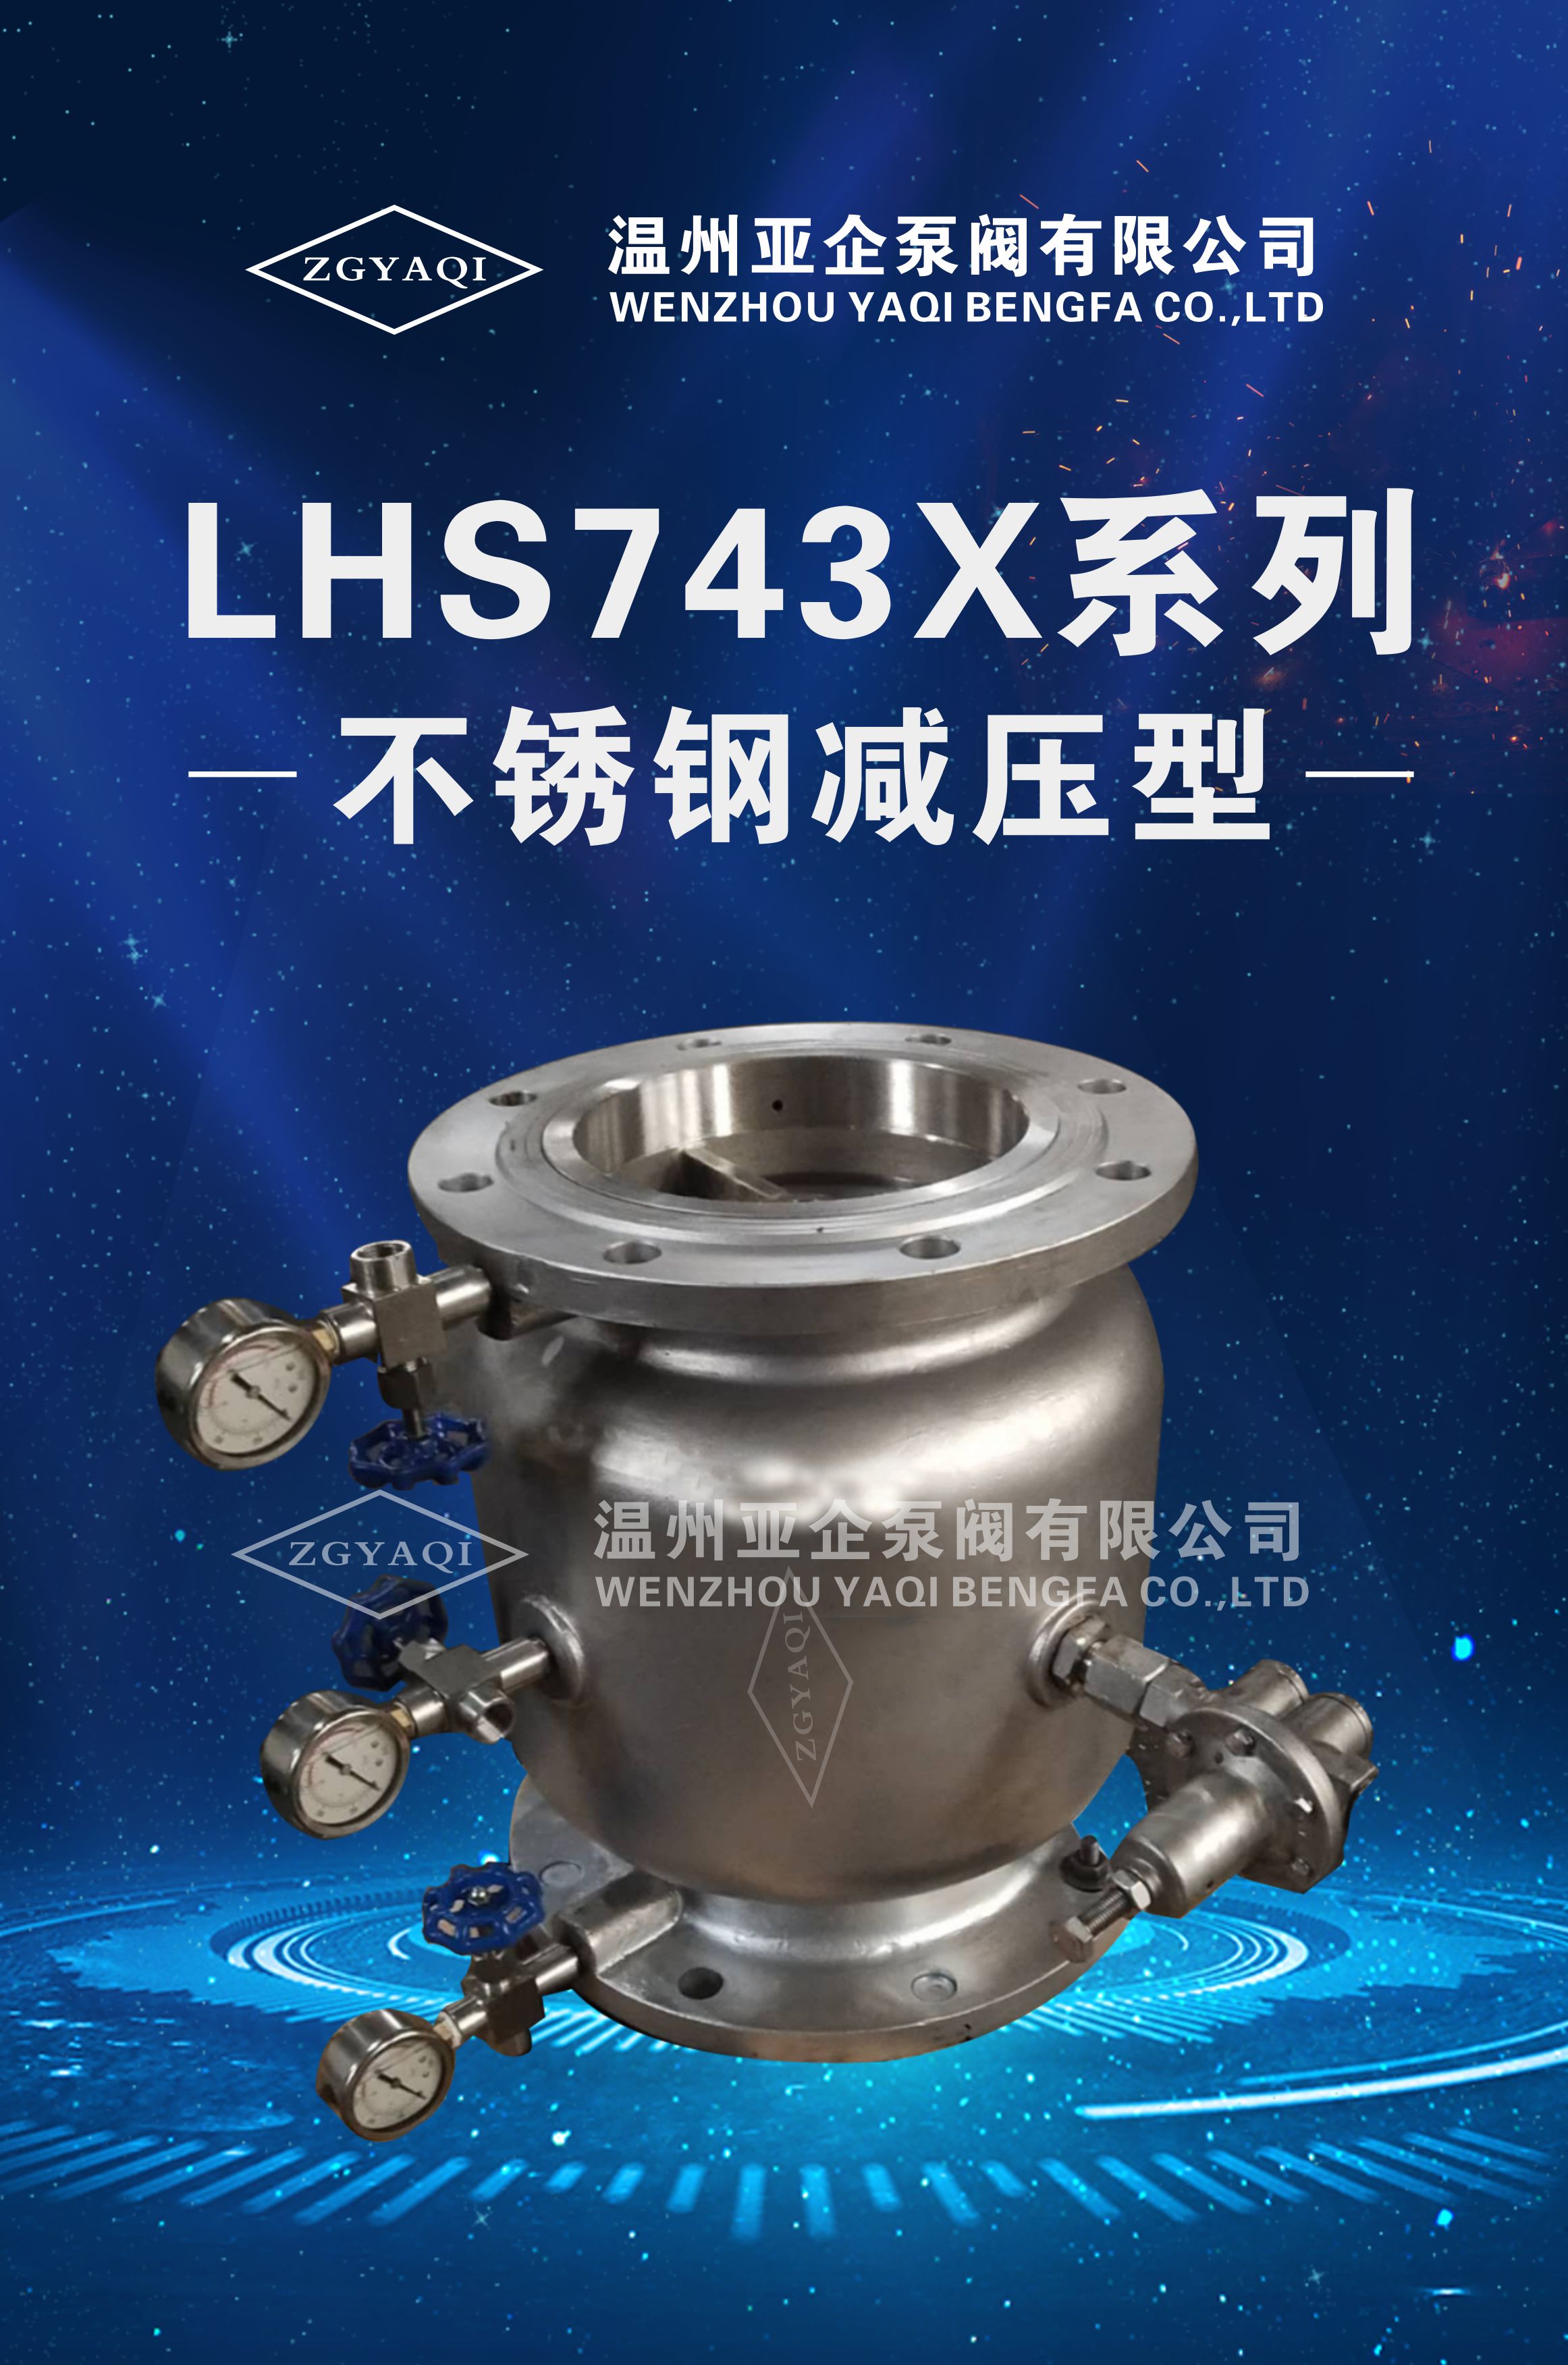 LHS743X系列 不锈钢减压型低阻力倒流防止器销售、多少钱、厂家电话【温州亚企泵阀有限公司】